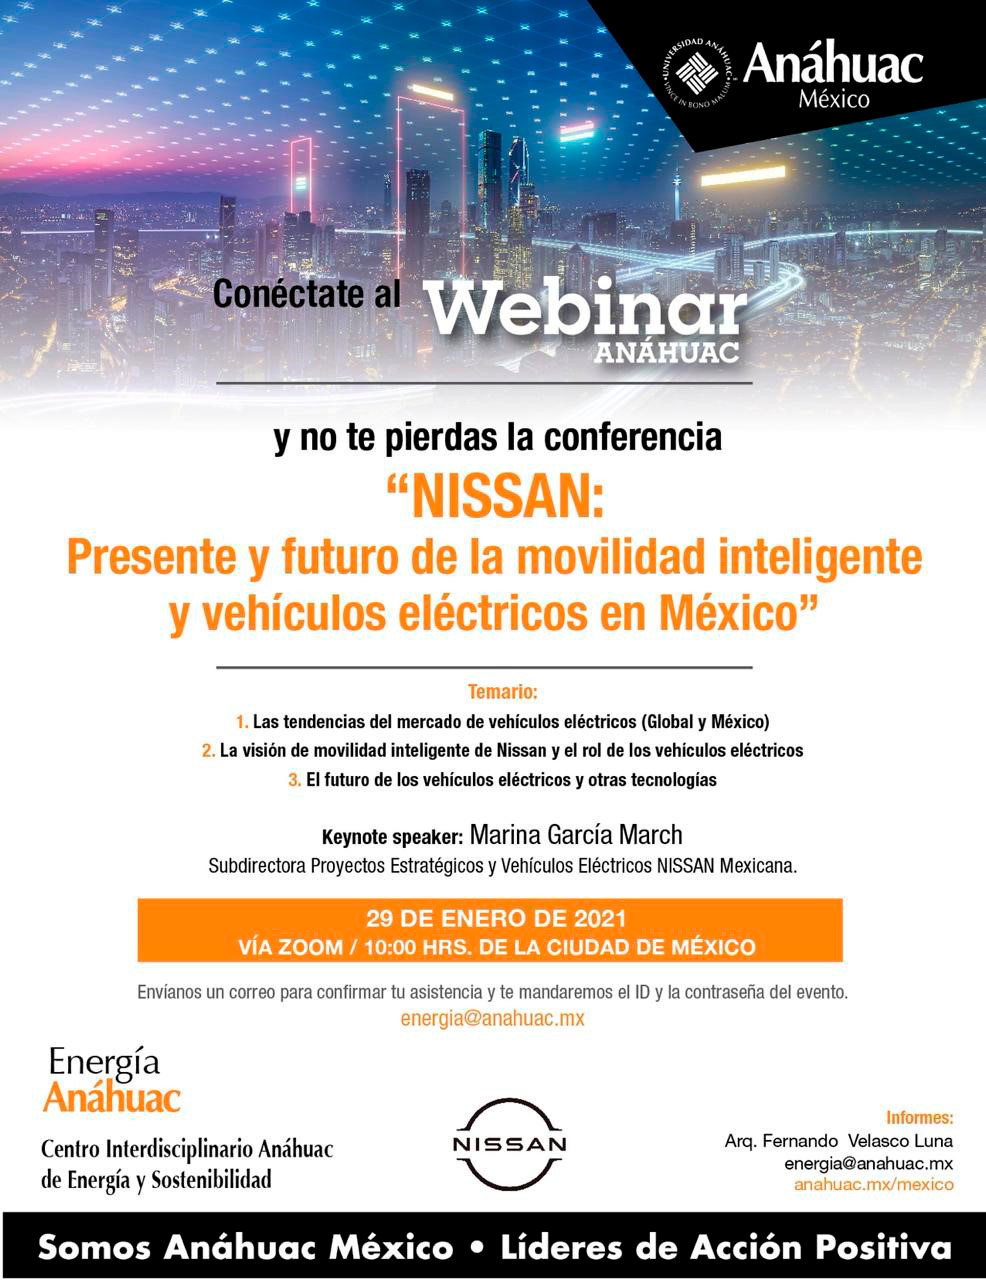 Nissan: presente y futuro de la movilidad inteligente y los vehículos eléctricos en México